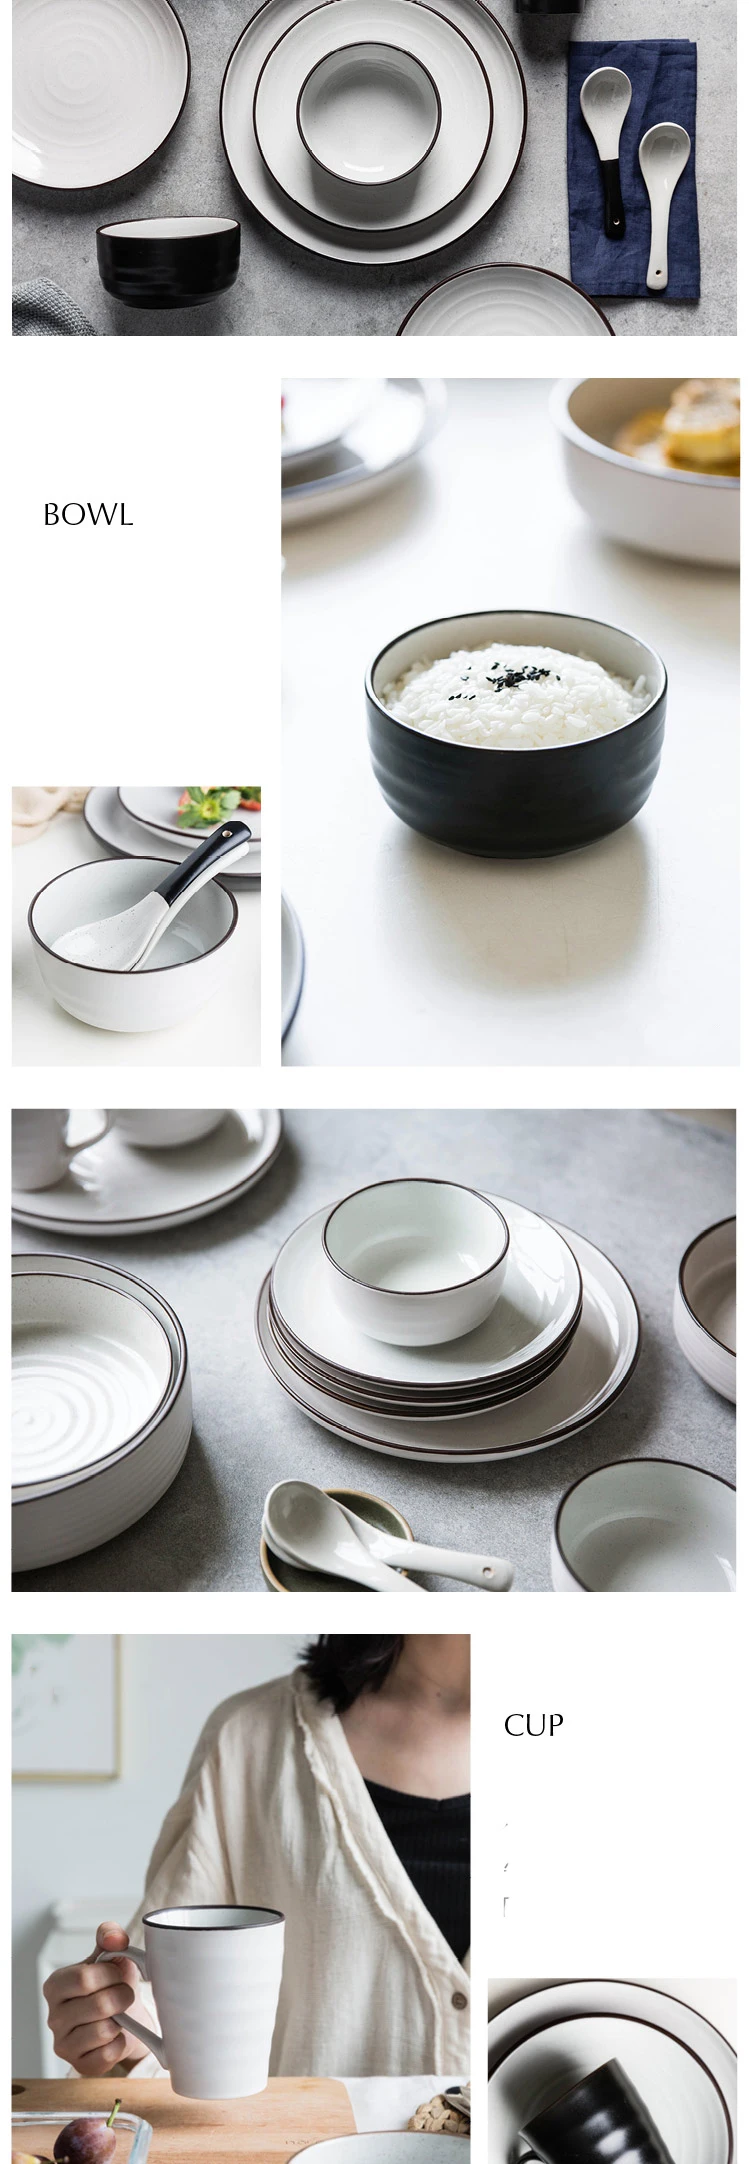 KINGLANG керамические фарфоровые двухцветные рисовые суповые чаши тарелка блюдо посуда